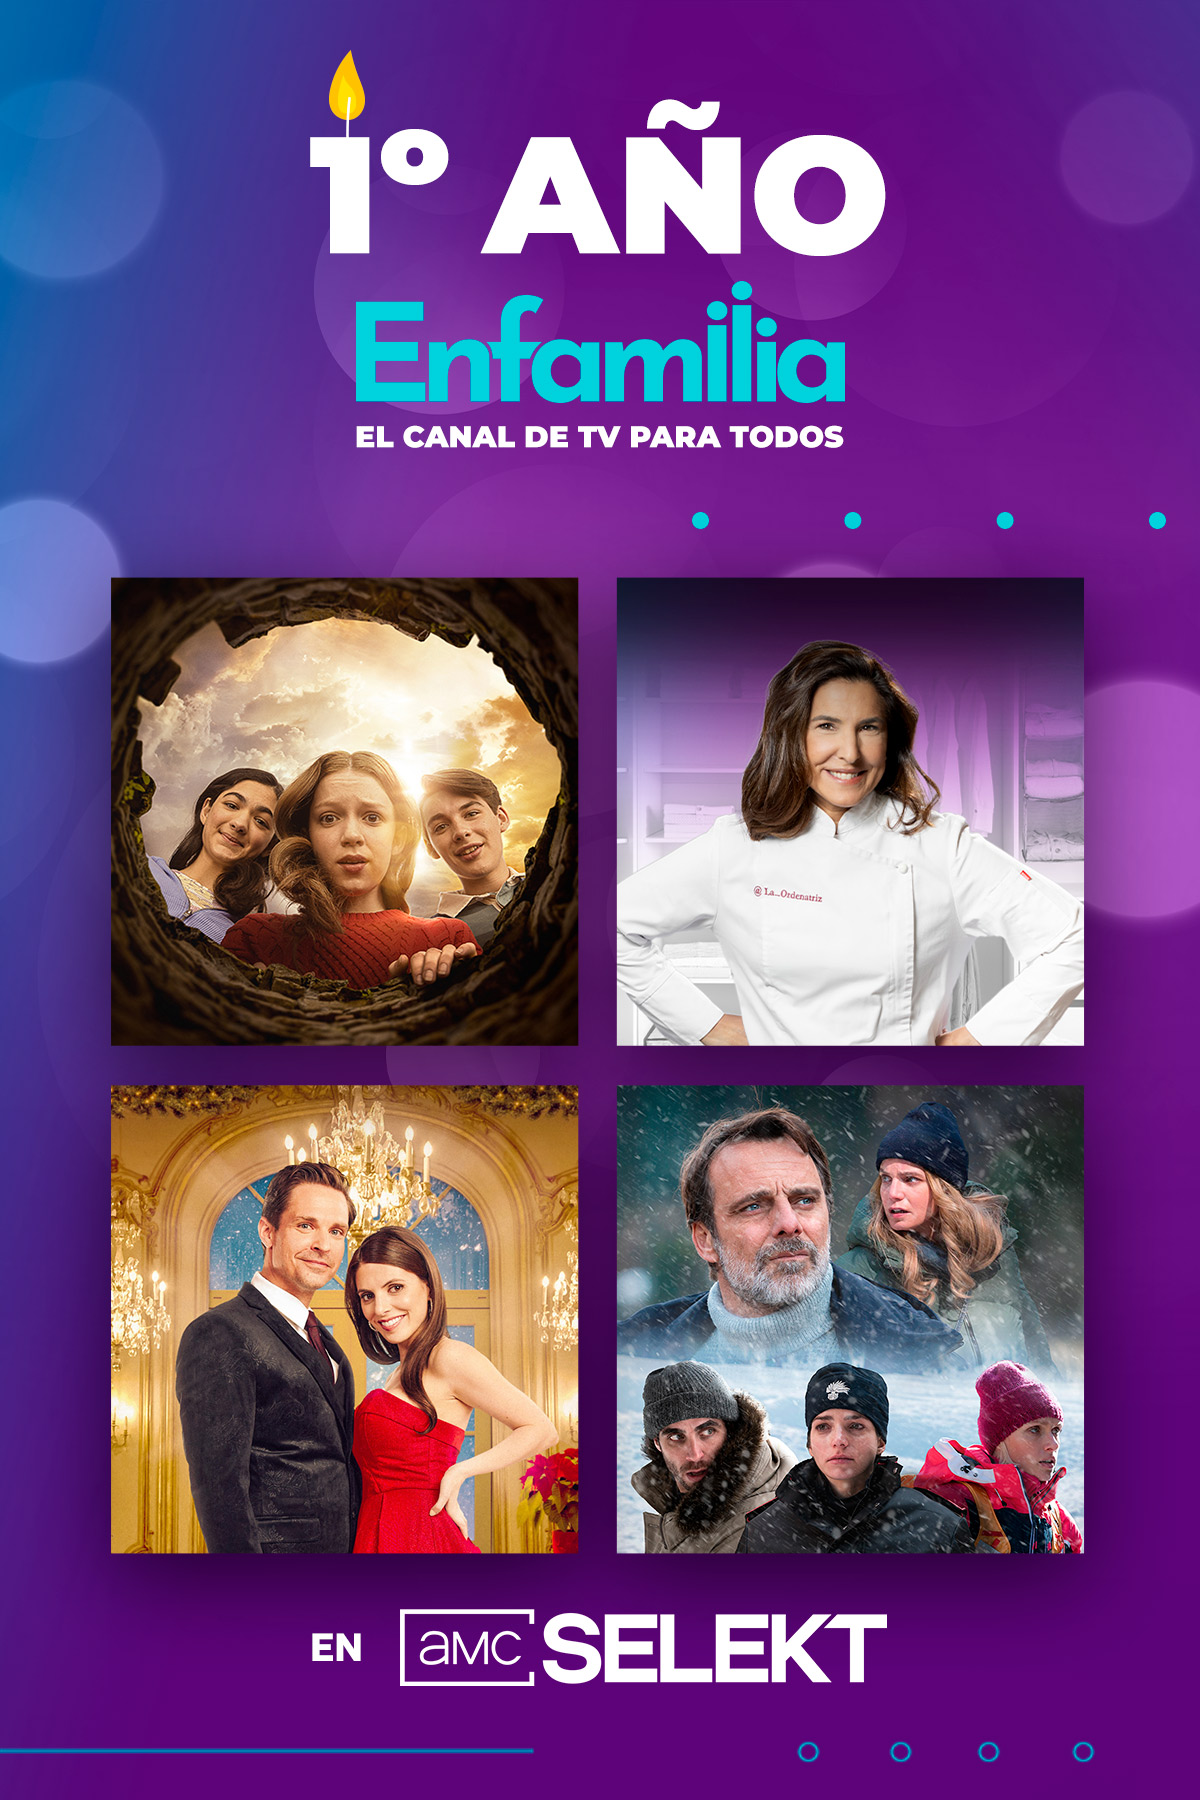 El canal de televisión Enfamilia celebra su 1º aniversario con una programación navideña muy especial